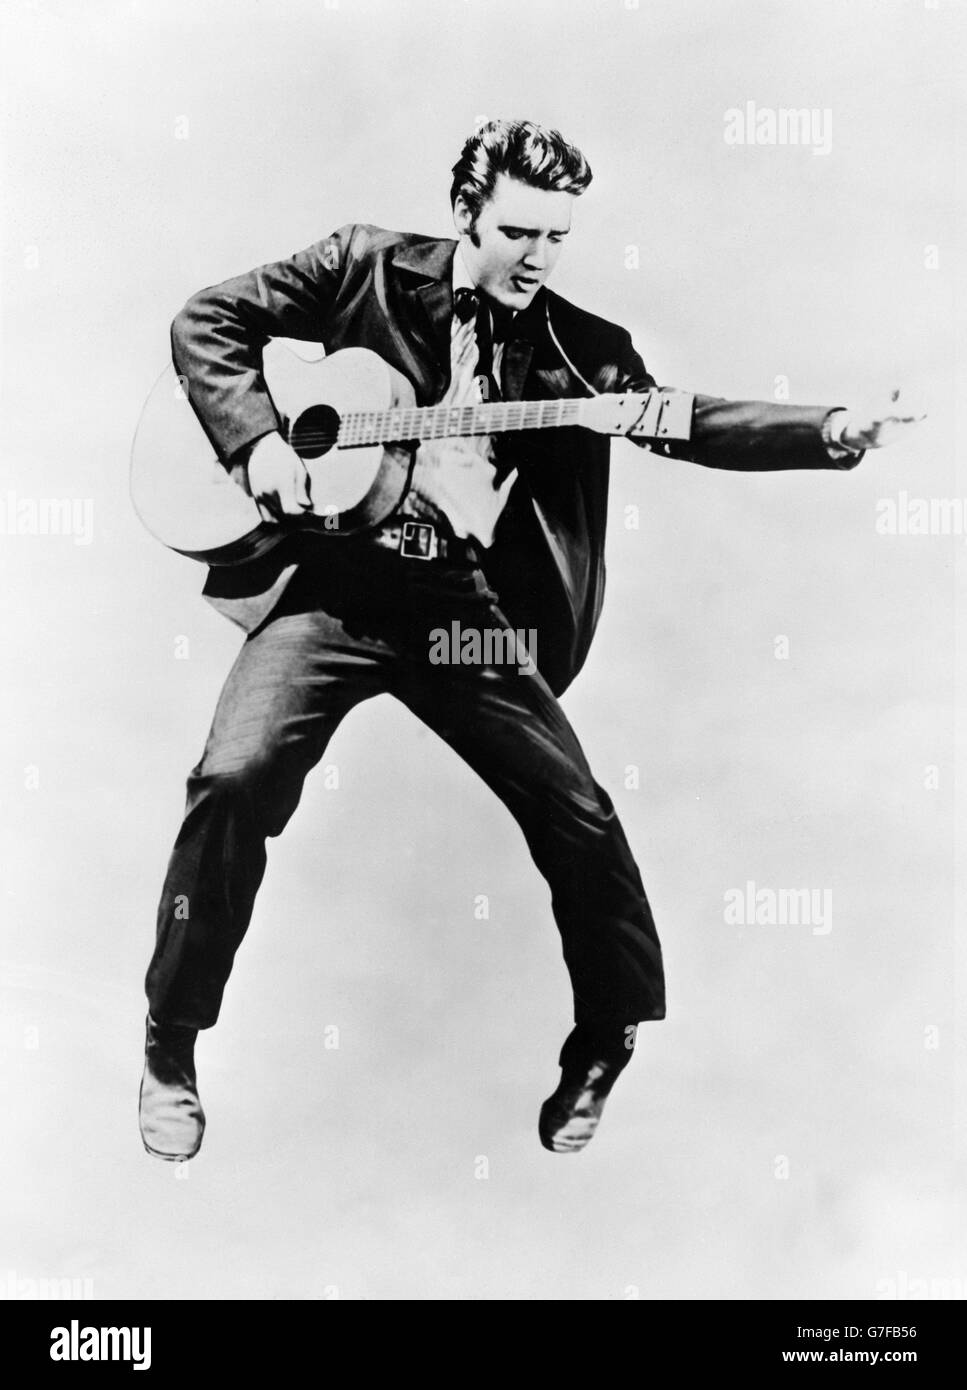 Sänger und Schauspieler Elvis Presley, der vor kurzem seine Einrufprüfung für die amerikanische Armee bestanden hat. Stockfoto